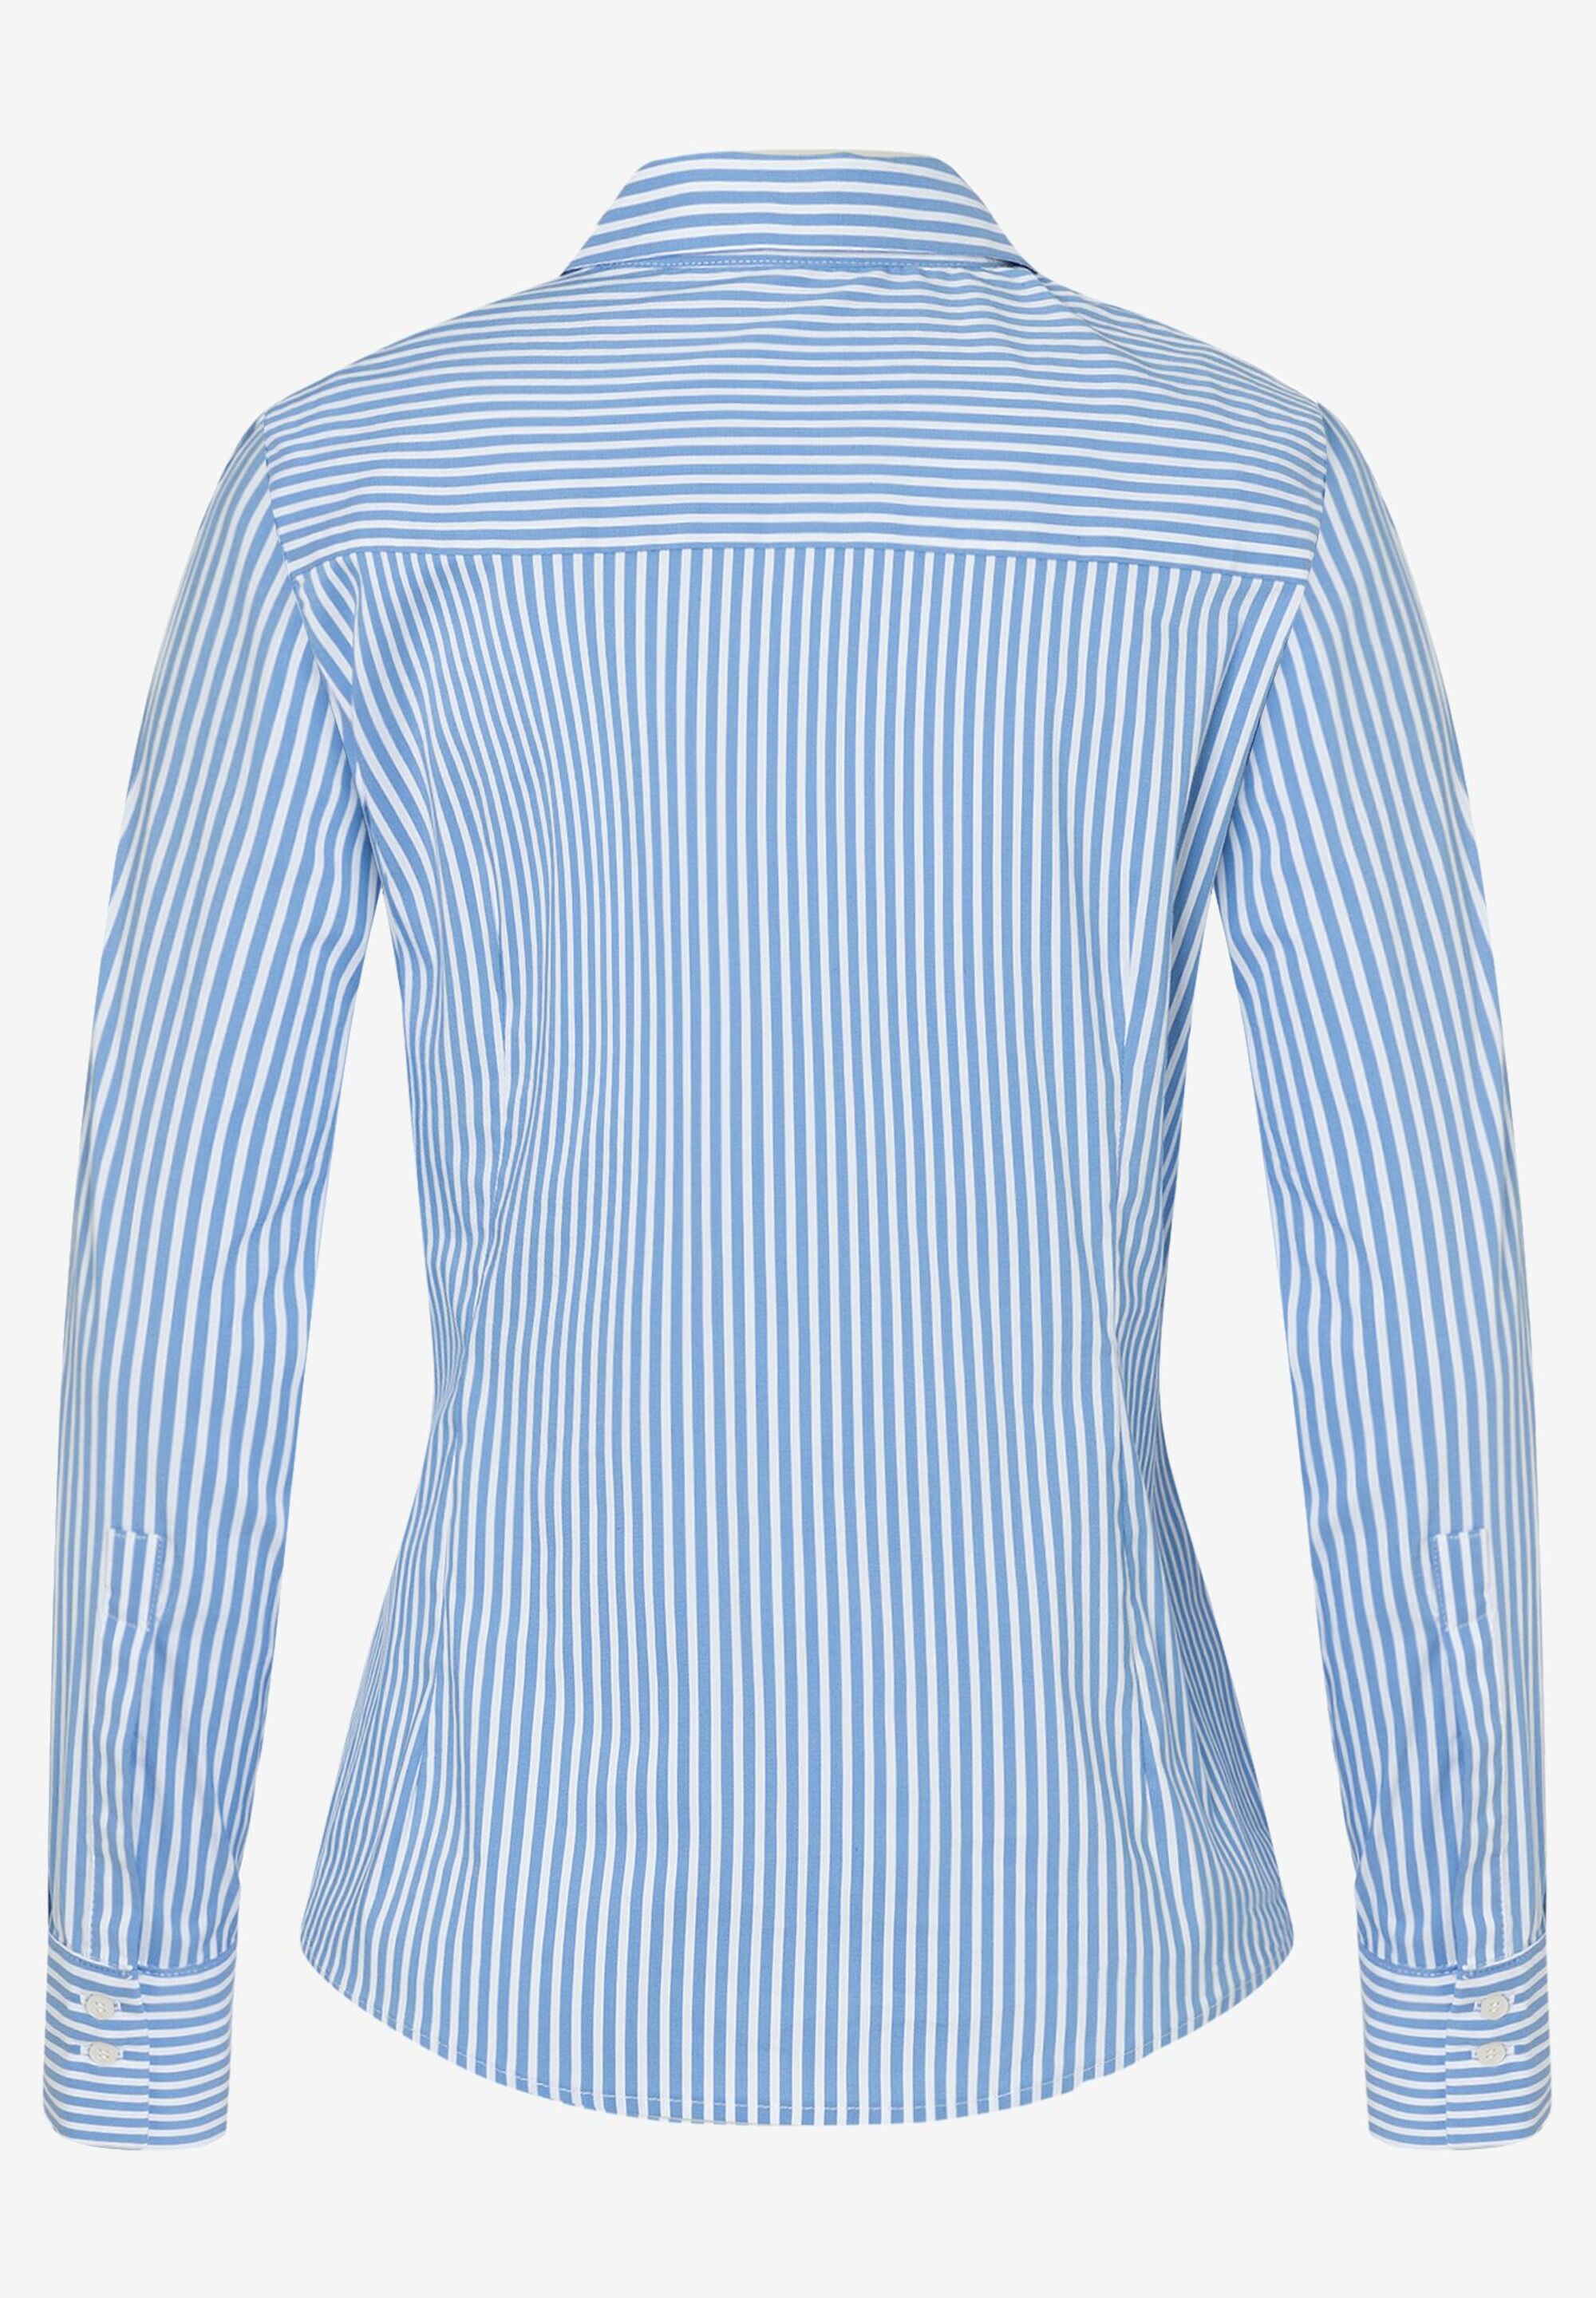 Hemdbluse mit Streifen, blau/weiß, Frühjahrs-Kollektion | Der offizielle  MORE & MORE Onlineshop